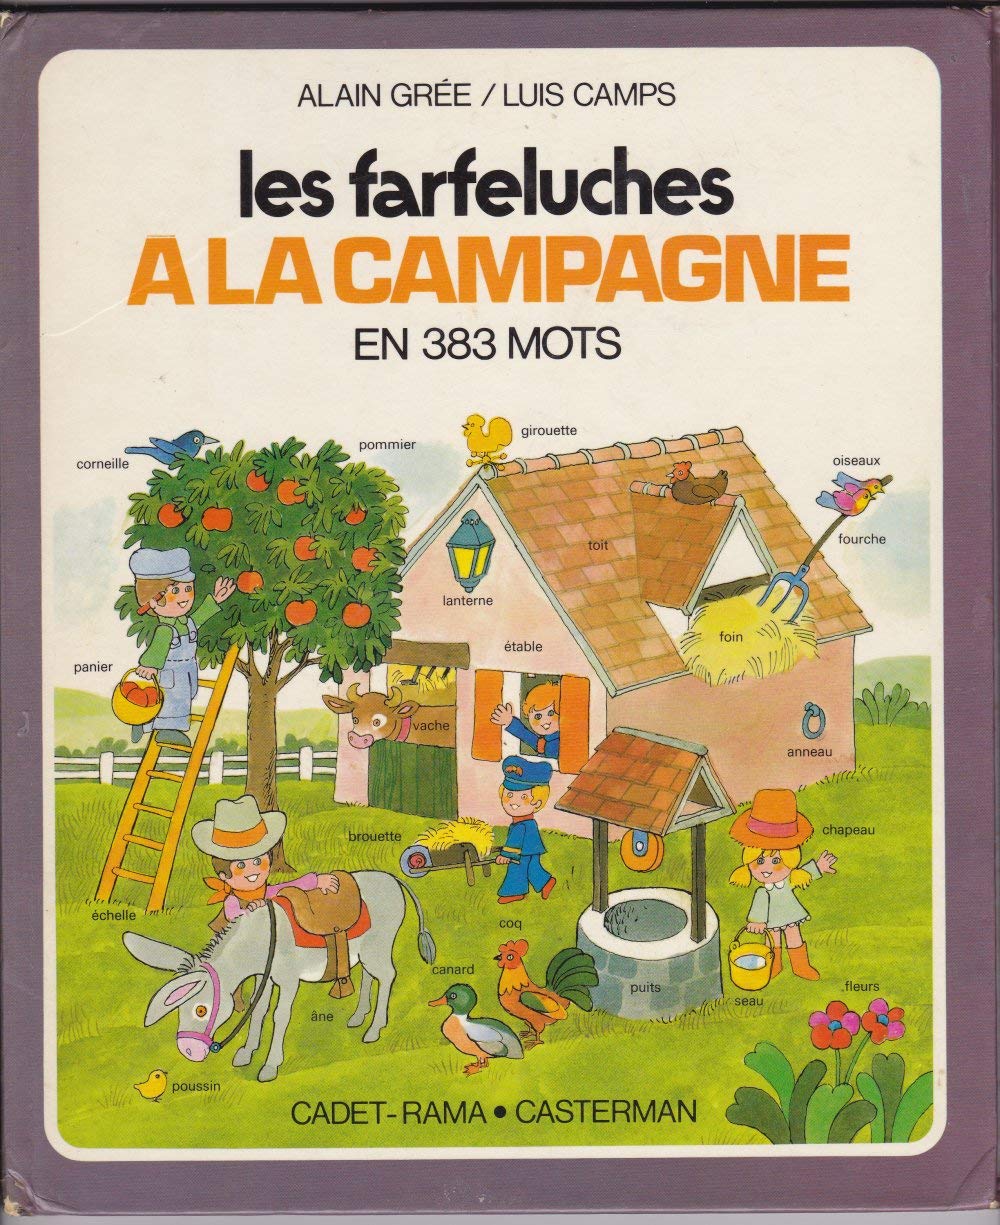 Les Farfeluches, 1975